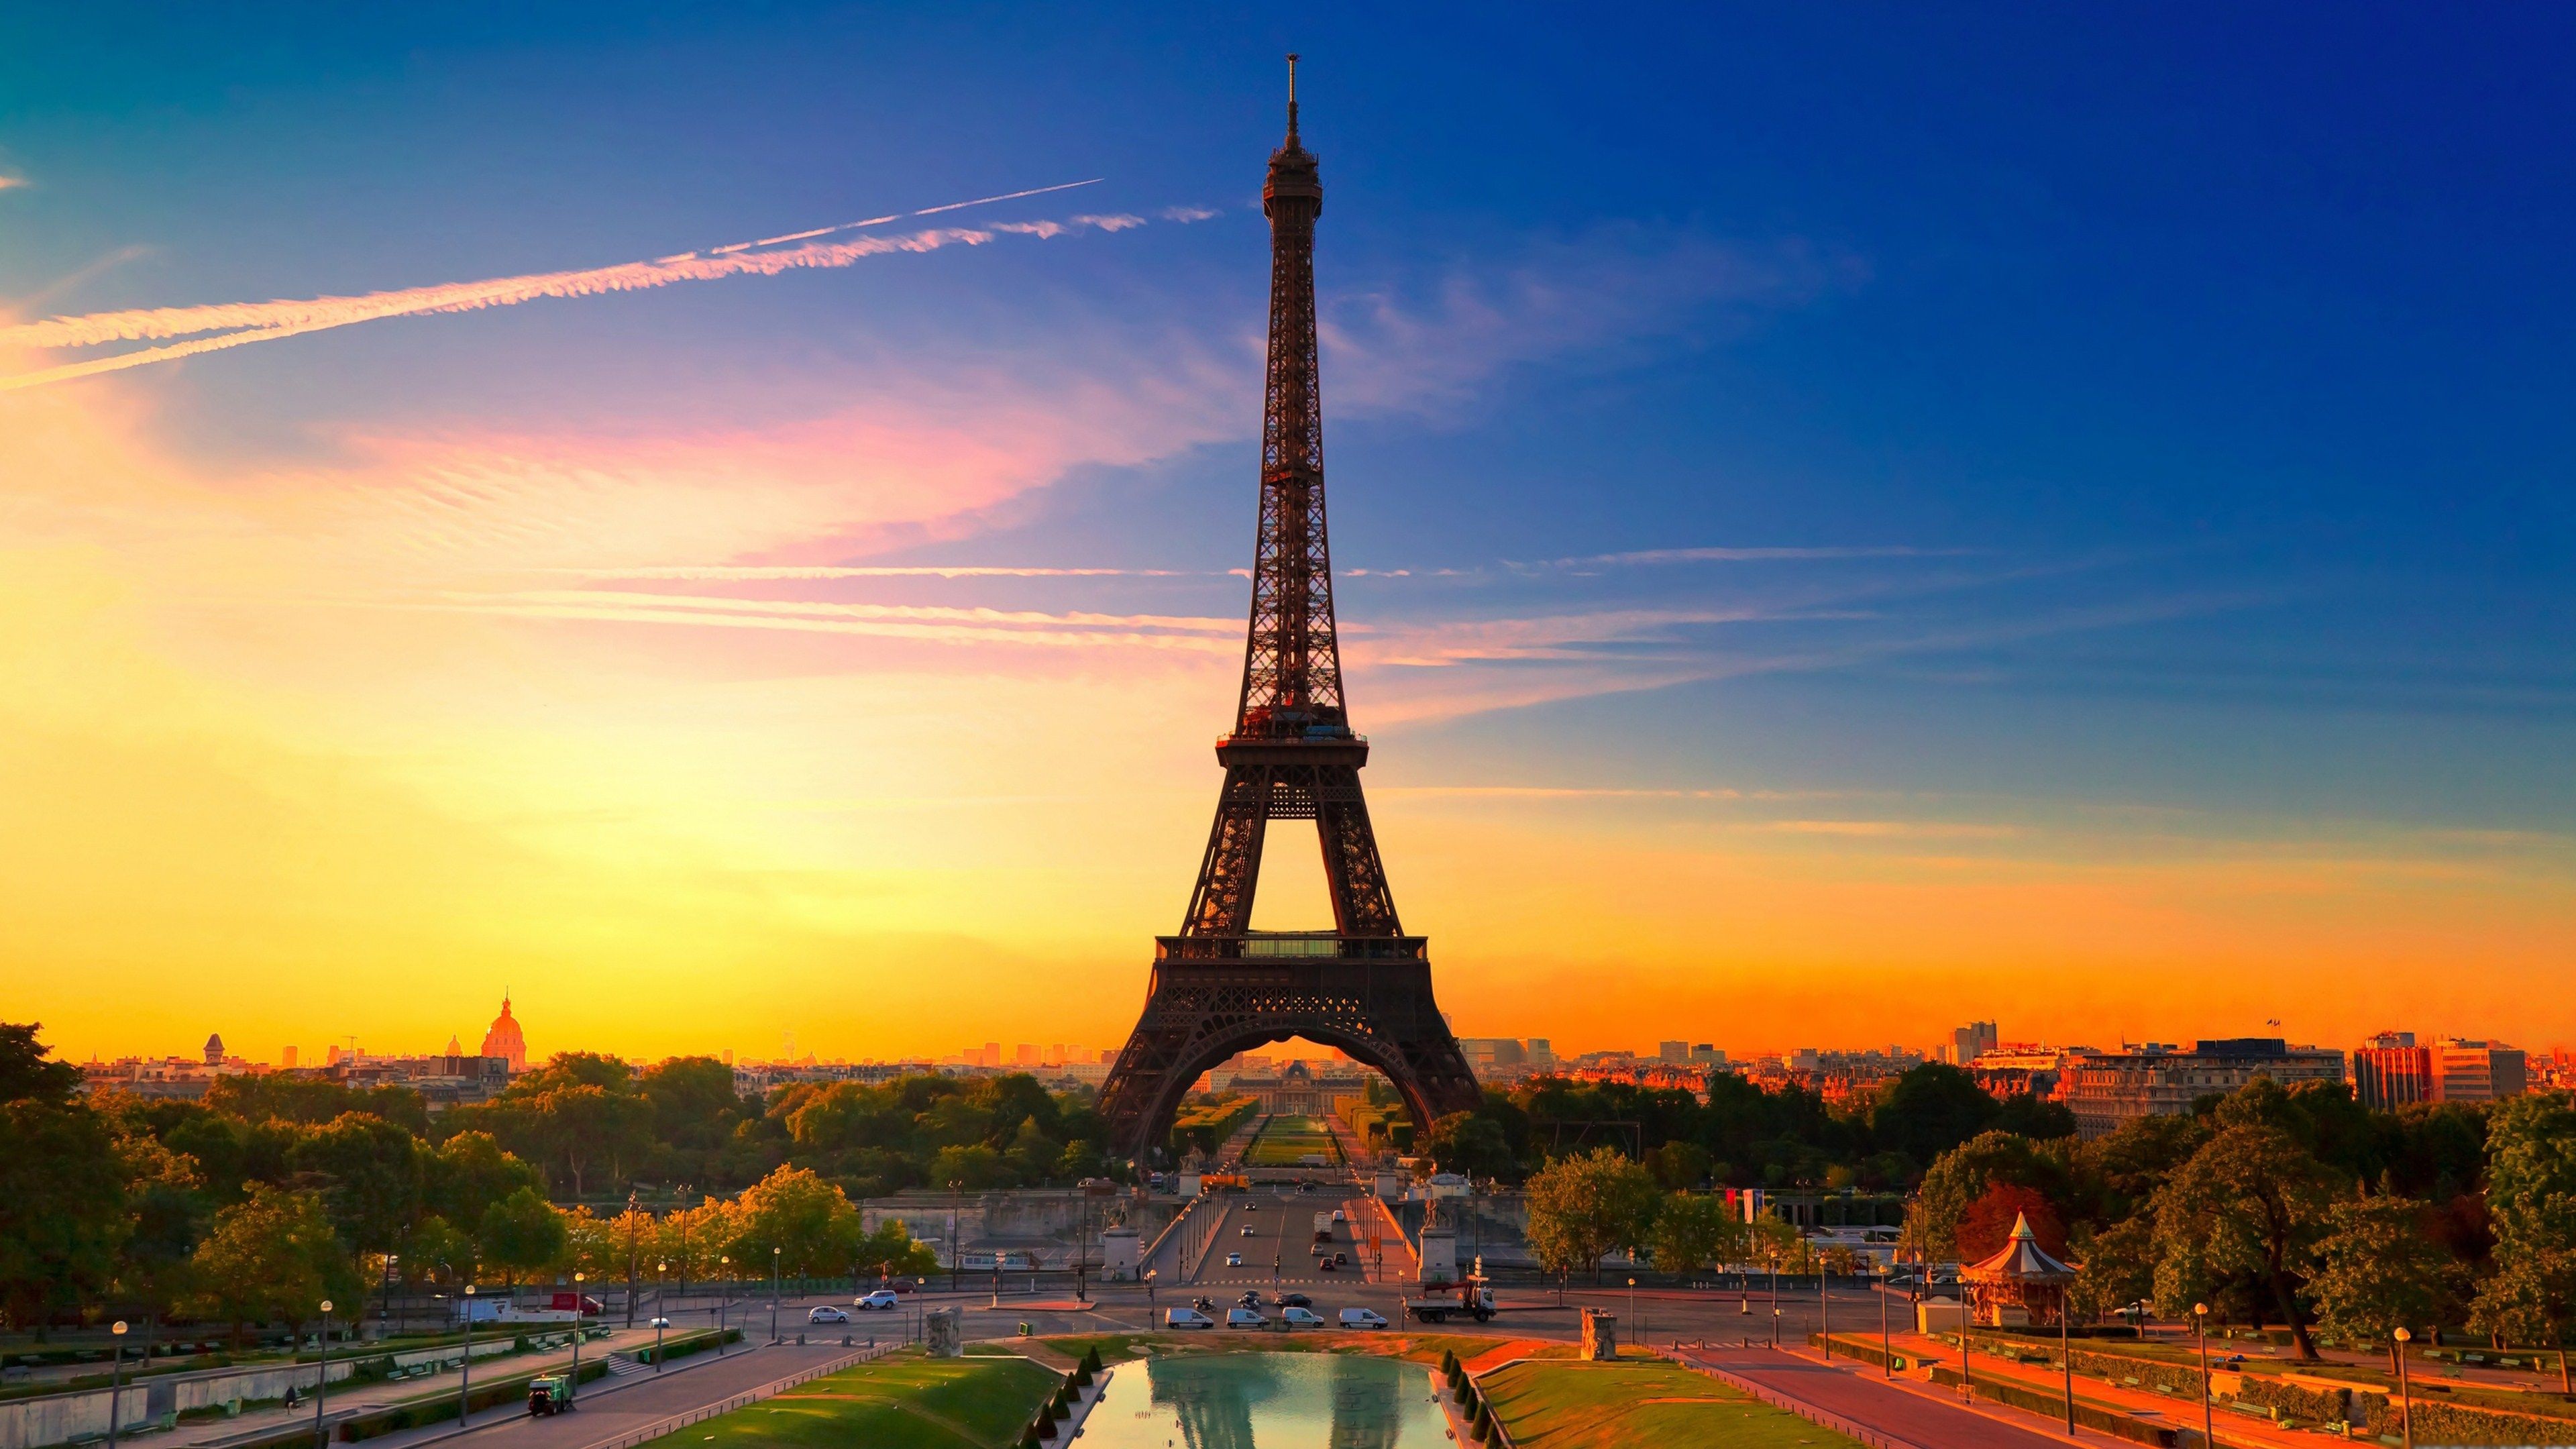 Fondos de la Torre Eiffel 33 - [3840 x 2160]